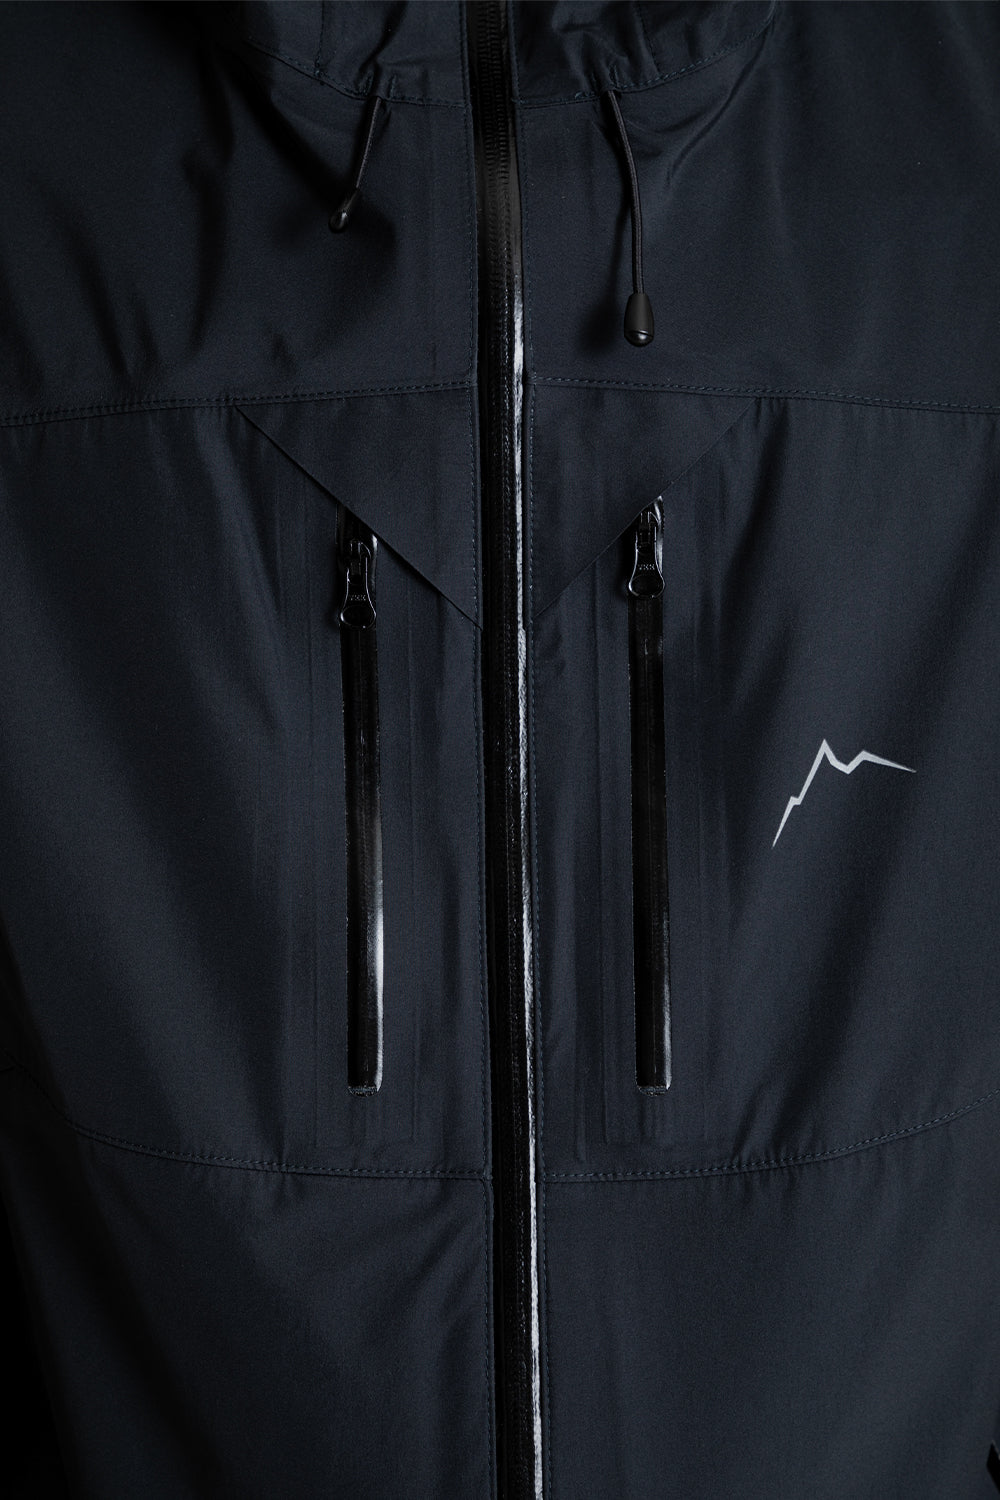 Cayl Light Shield Jacket 2 - Black